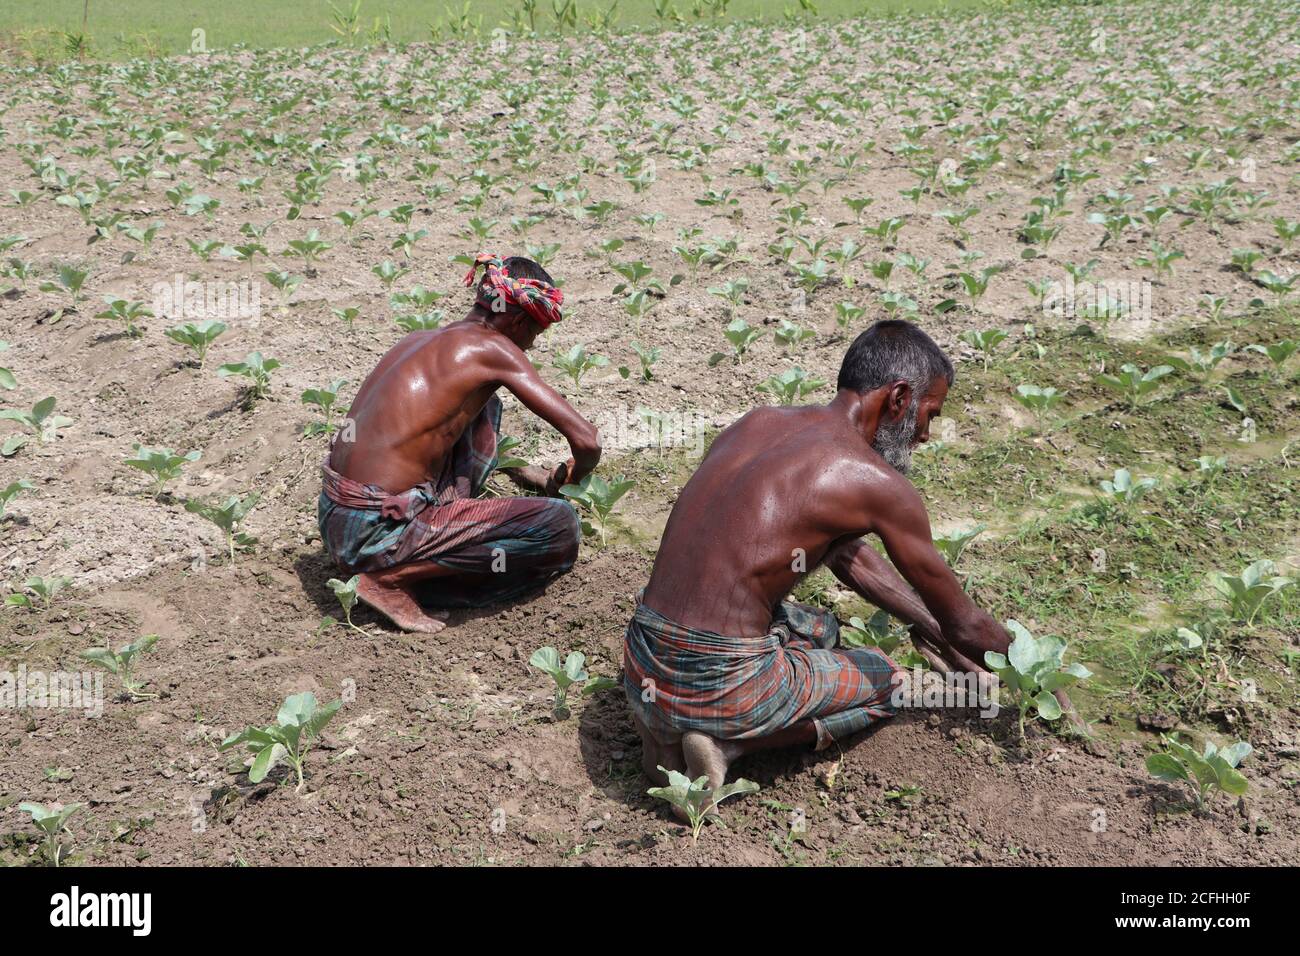 Zwei verschwitzte asiatische Arbeiter (Tagelöhner) Arbeiten auf dem Gemüse (Blumenkohl) Feld in einem ländlichen Region Bangladesch Stockfoto